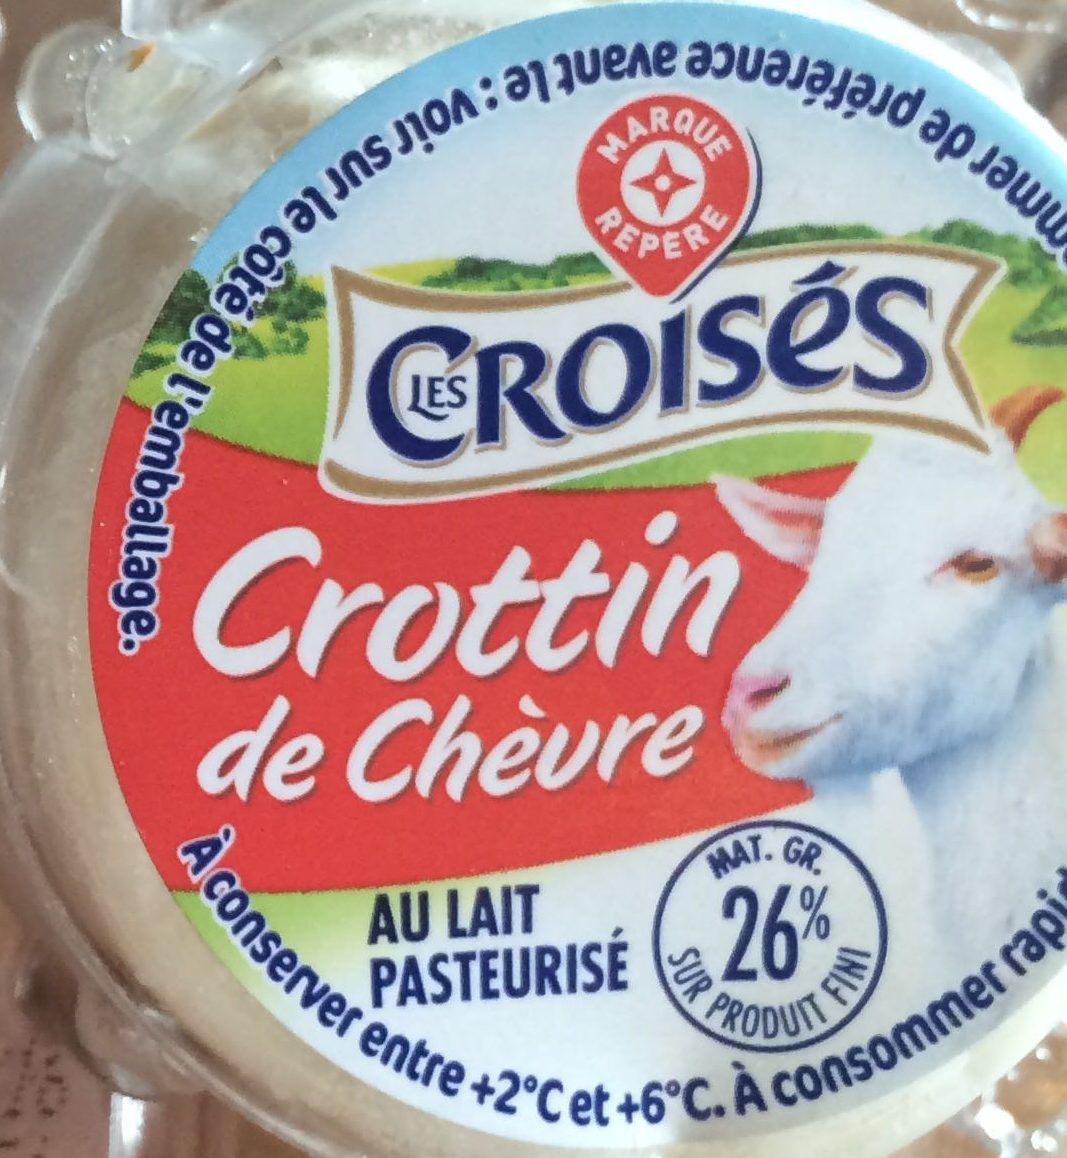 Crottin de chevre Les Croises au lait pasteurisé - Ingredients - fr